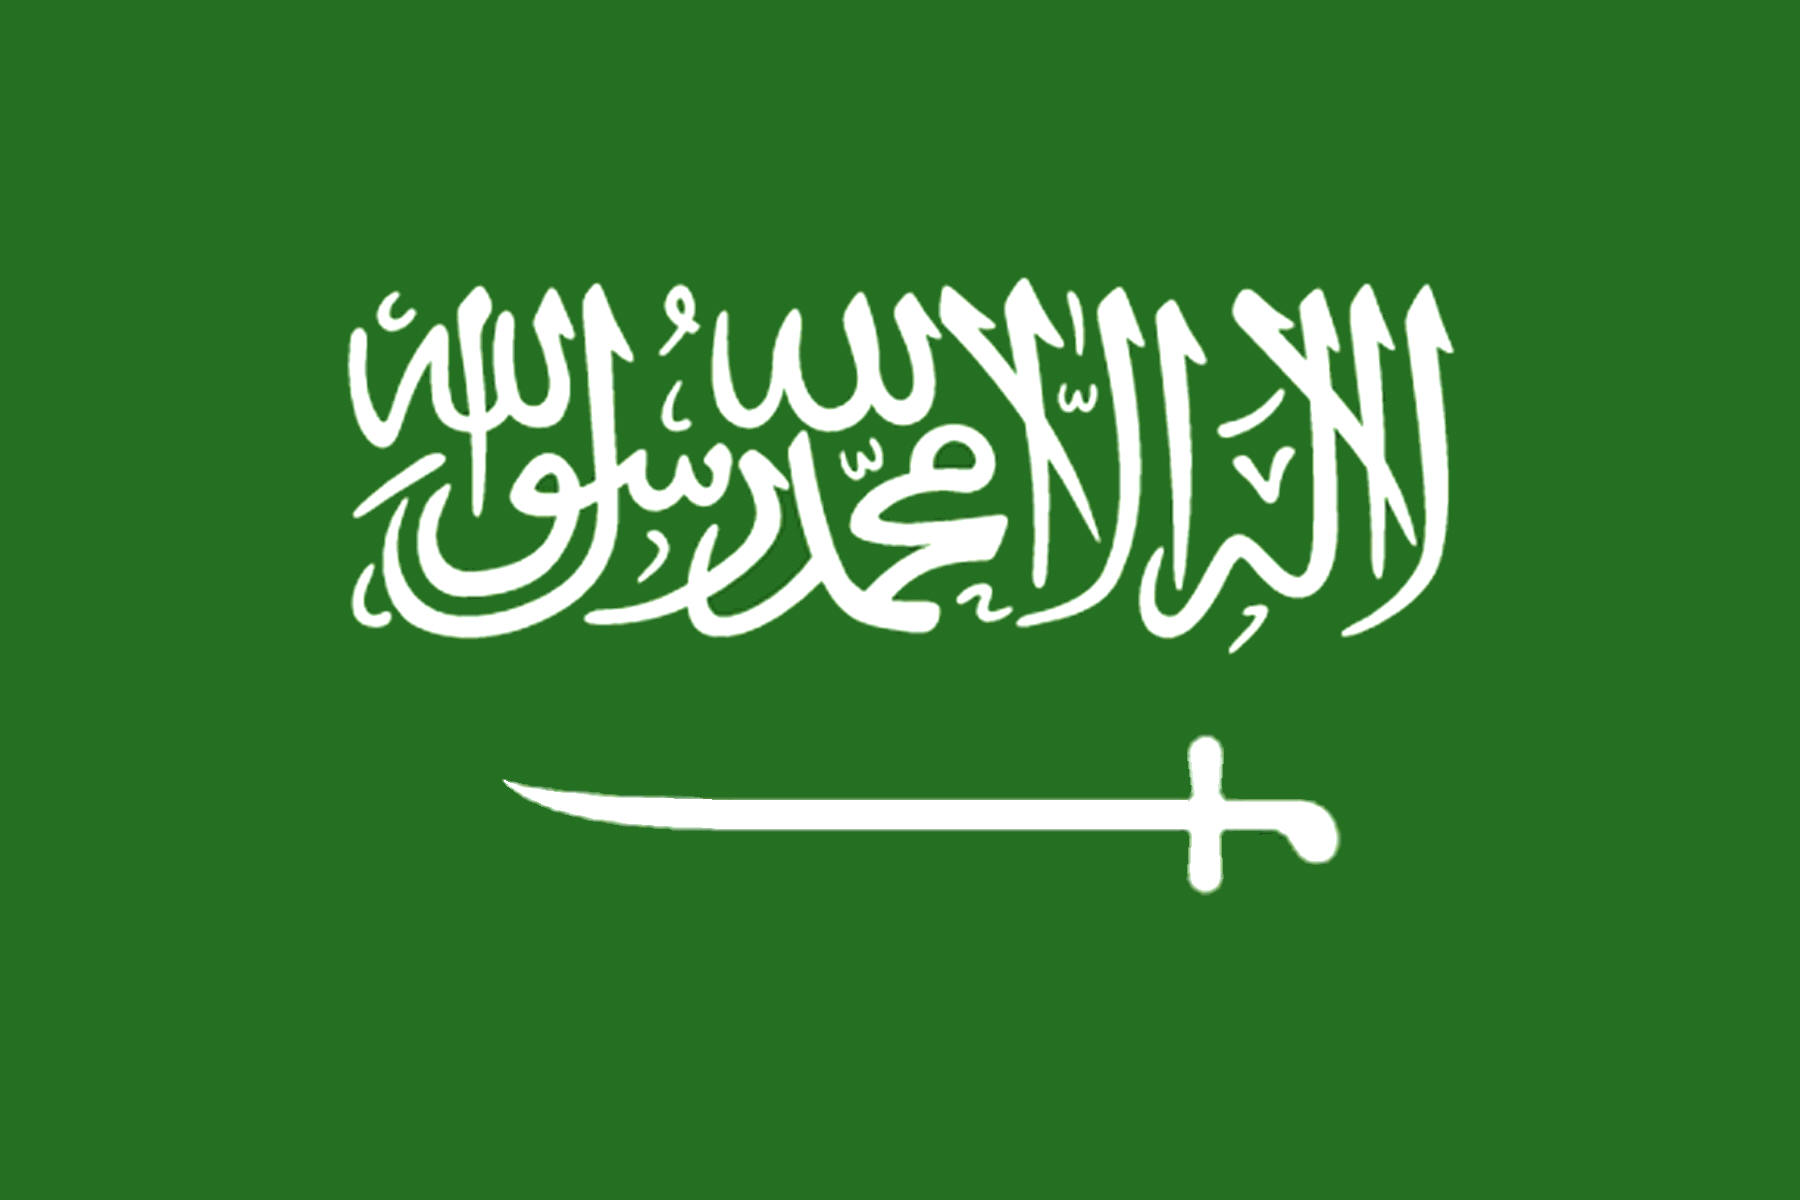 Saudi Arabia Flag Wallpaper HD Click To